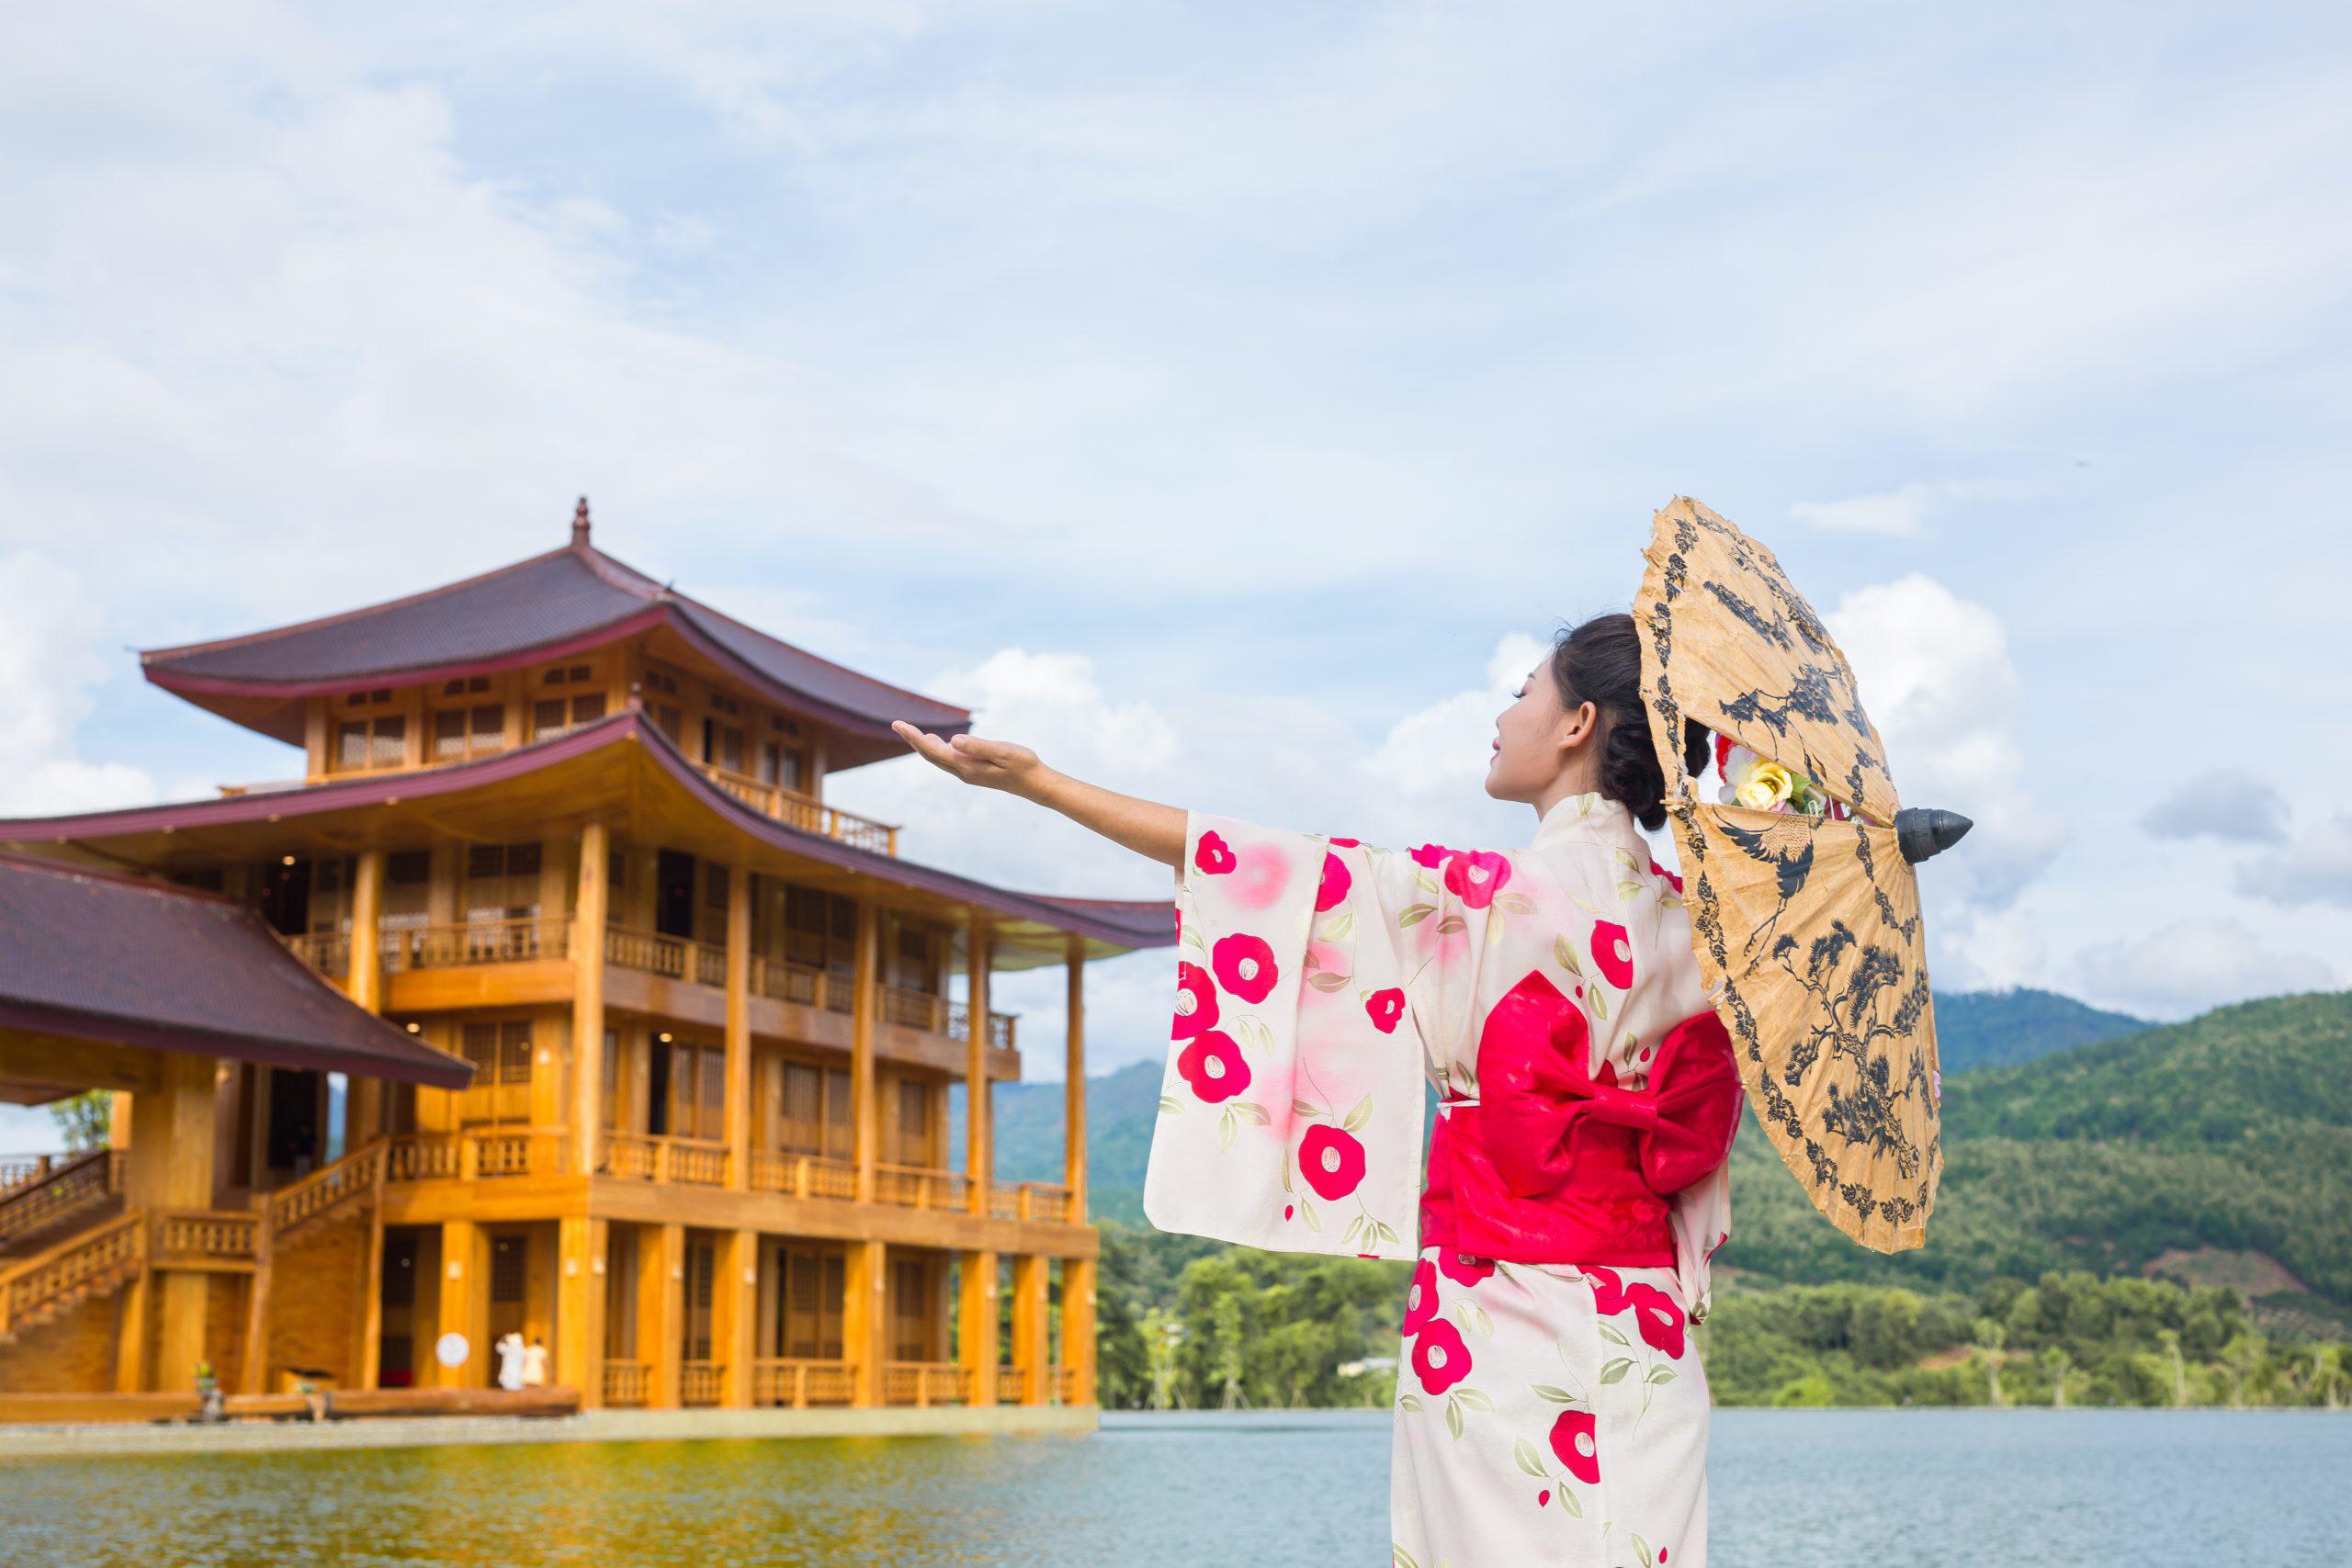 Đi du lịch Nhật Bản cần chuẩn bị những gì?